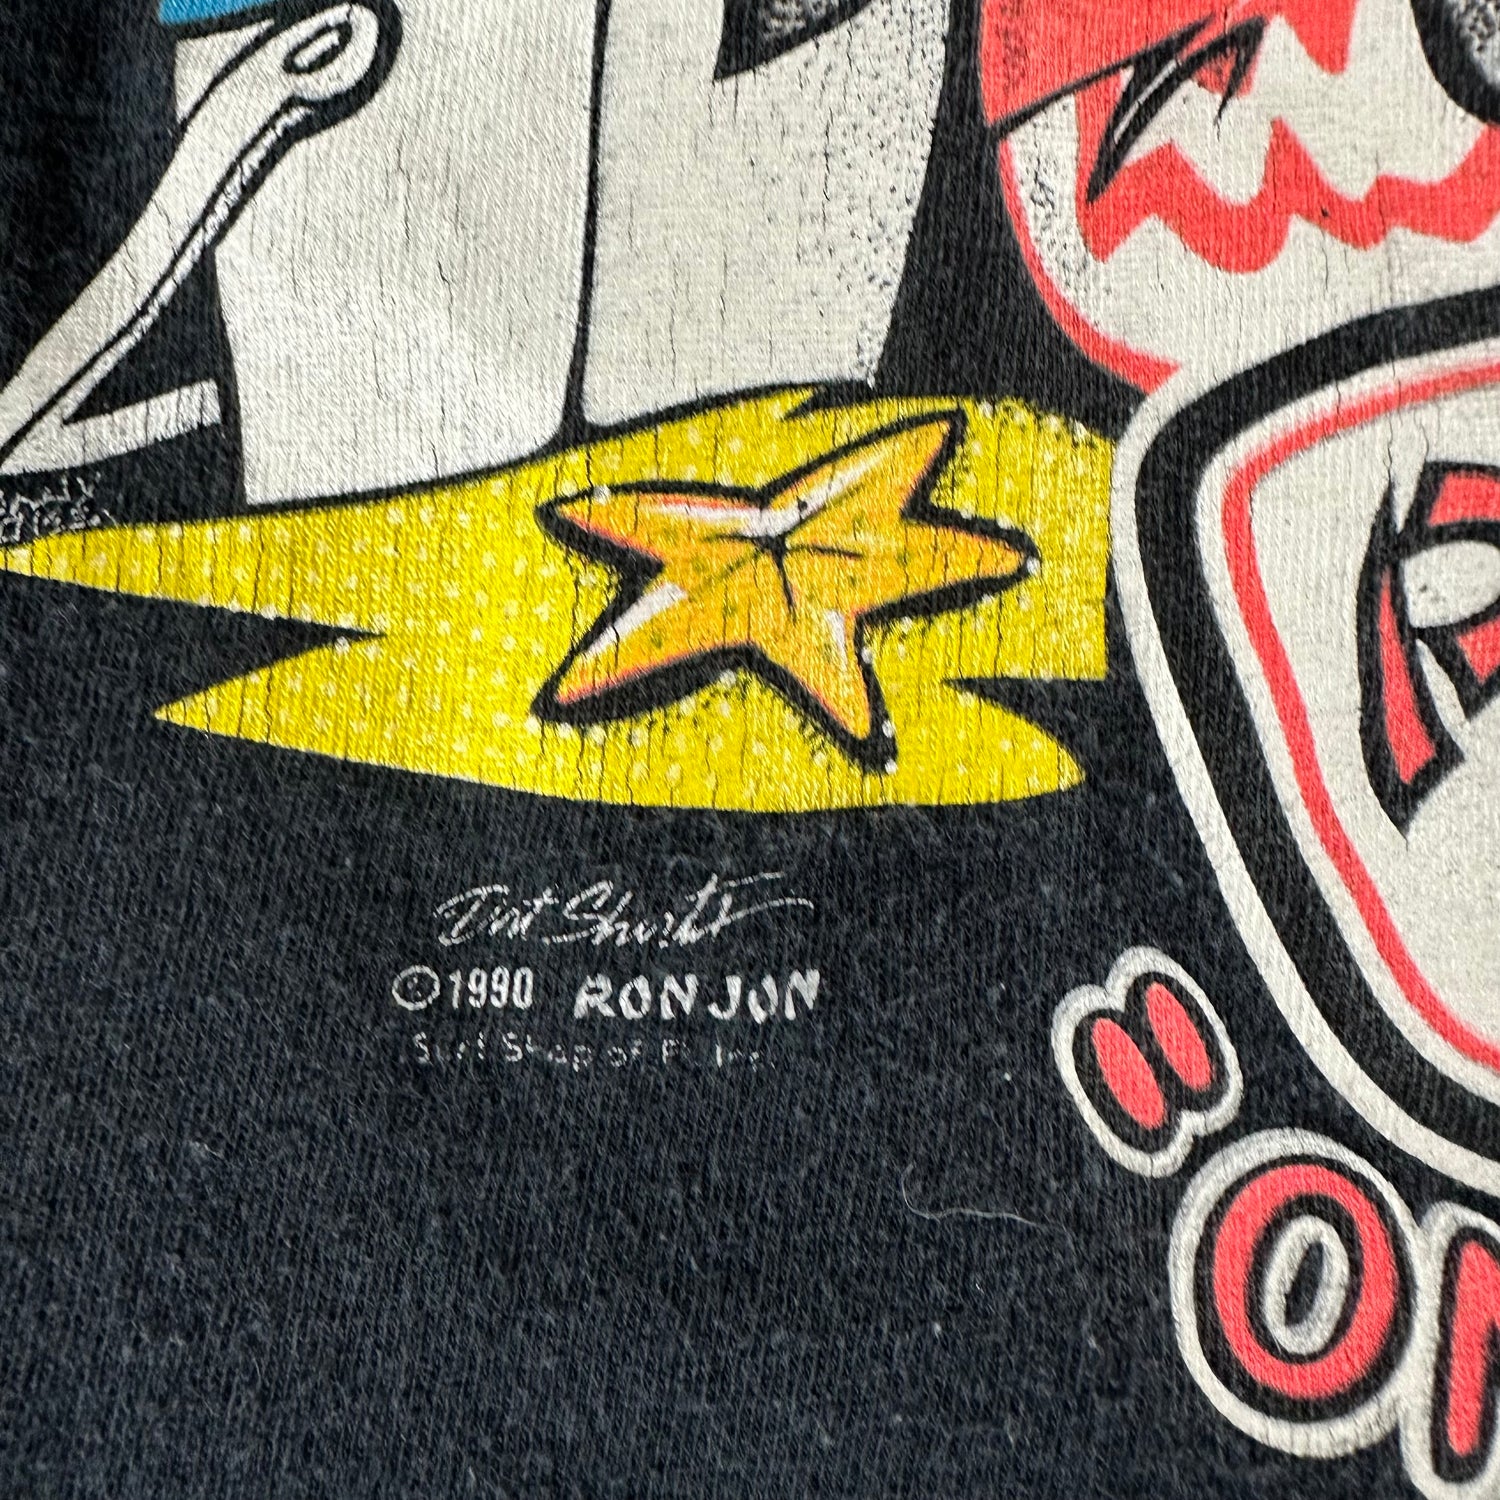 Vintage 1990s Ron Jon T-shirt size Medium